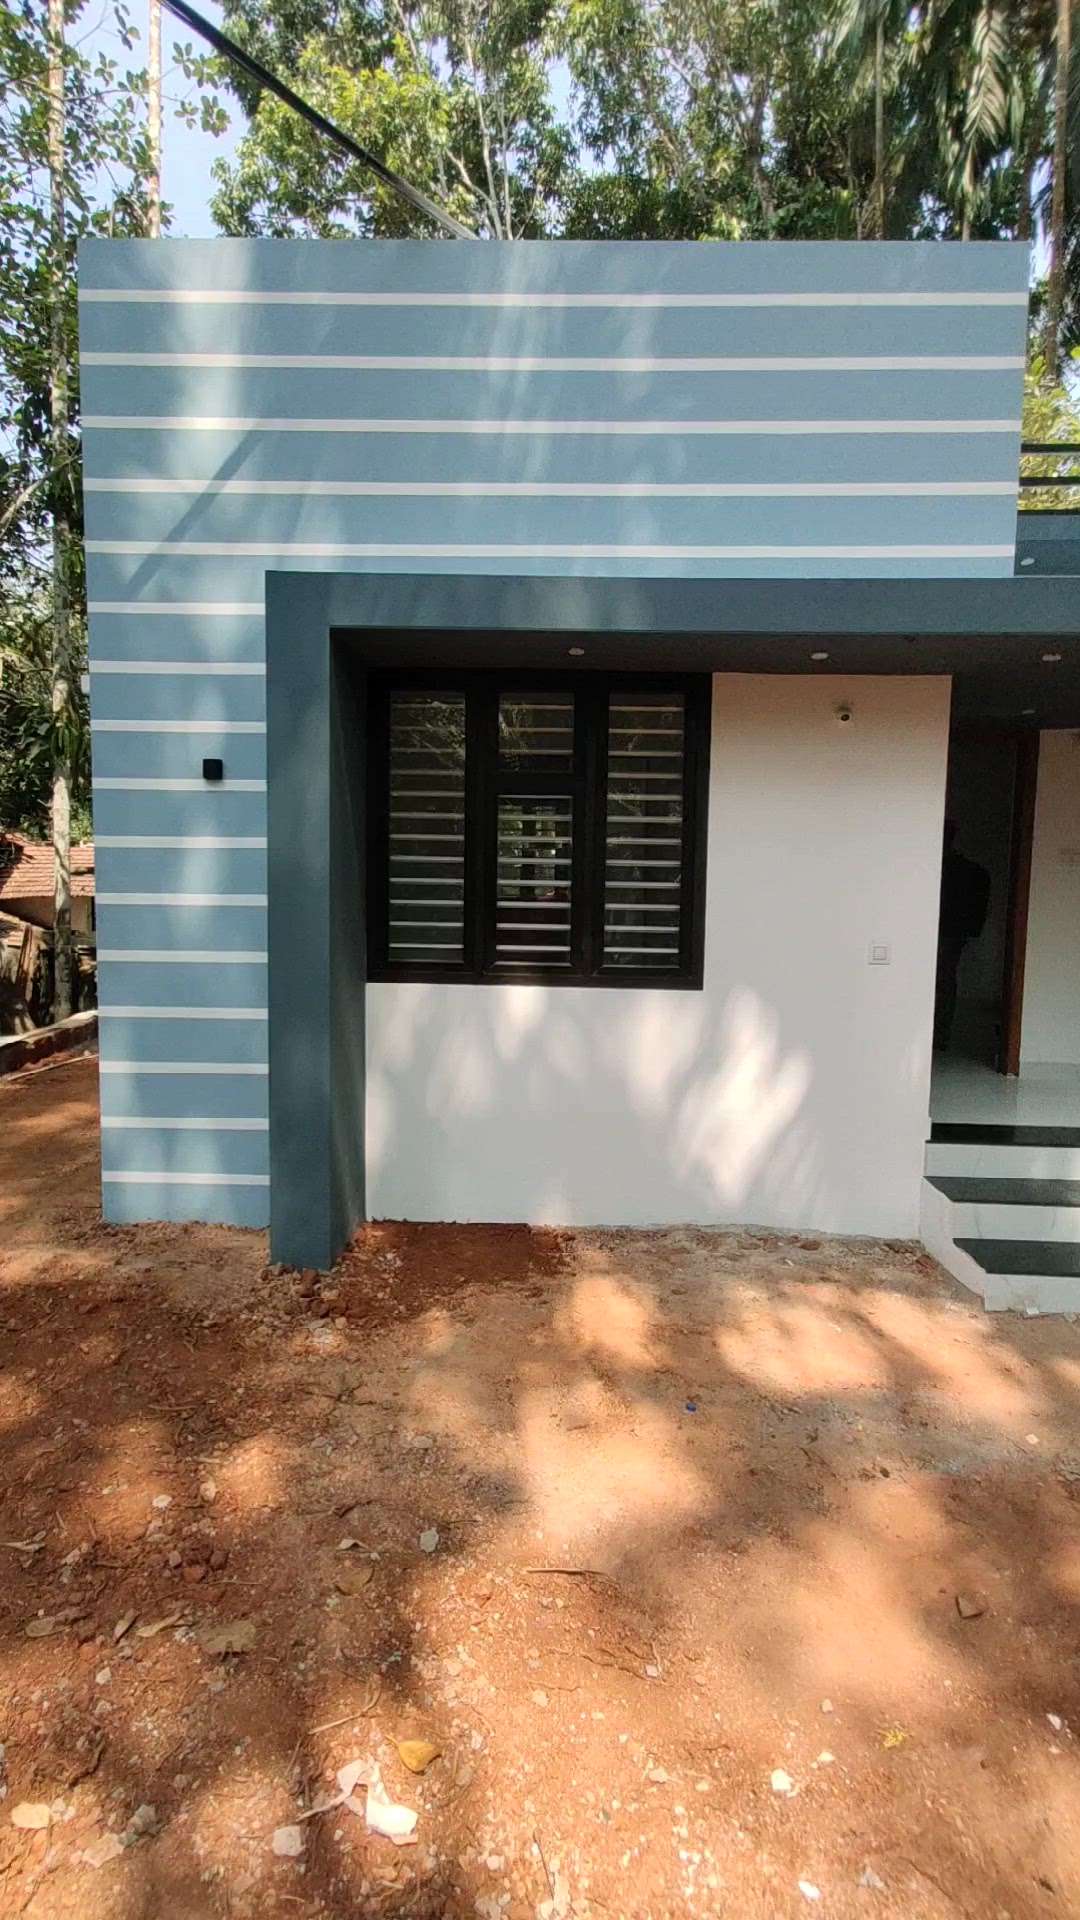 12.50 ലക്ഷത്തിന് 800 sqft വീട്
Location : Calicut


 #budgethomes #Kozhikode #malappuram #HouseConstruction #keralastyle #Kollam #kottayam #Wayanad #Malappuram #Palakkad #koloapp